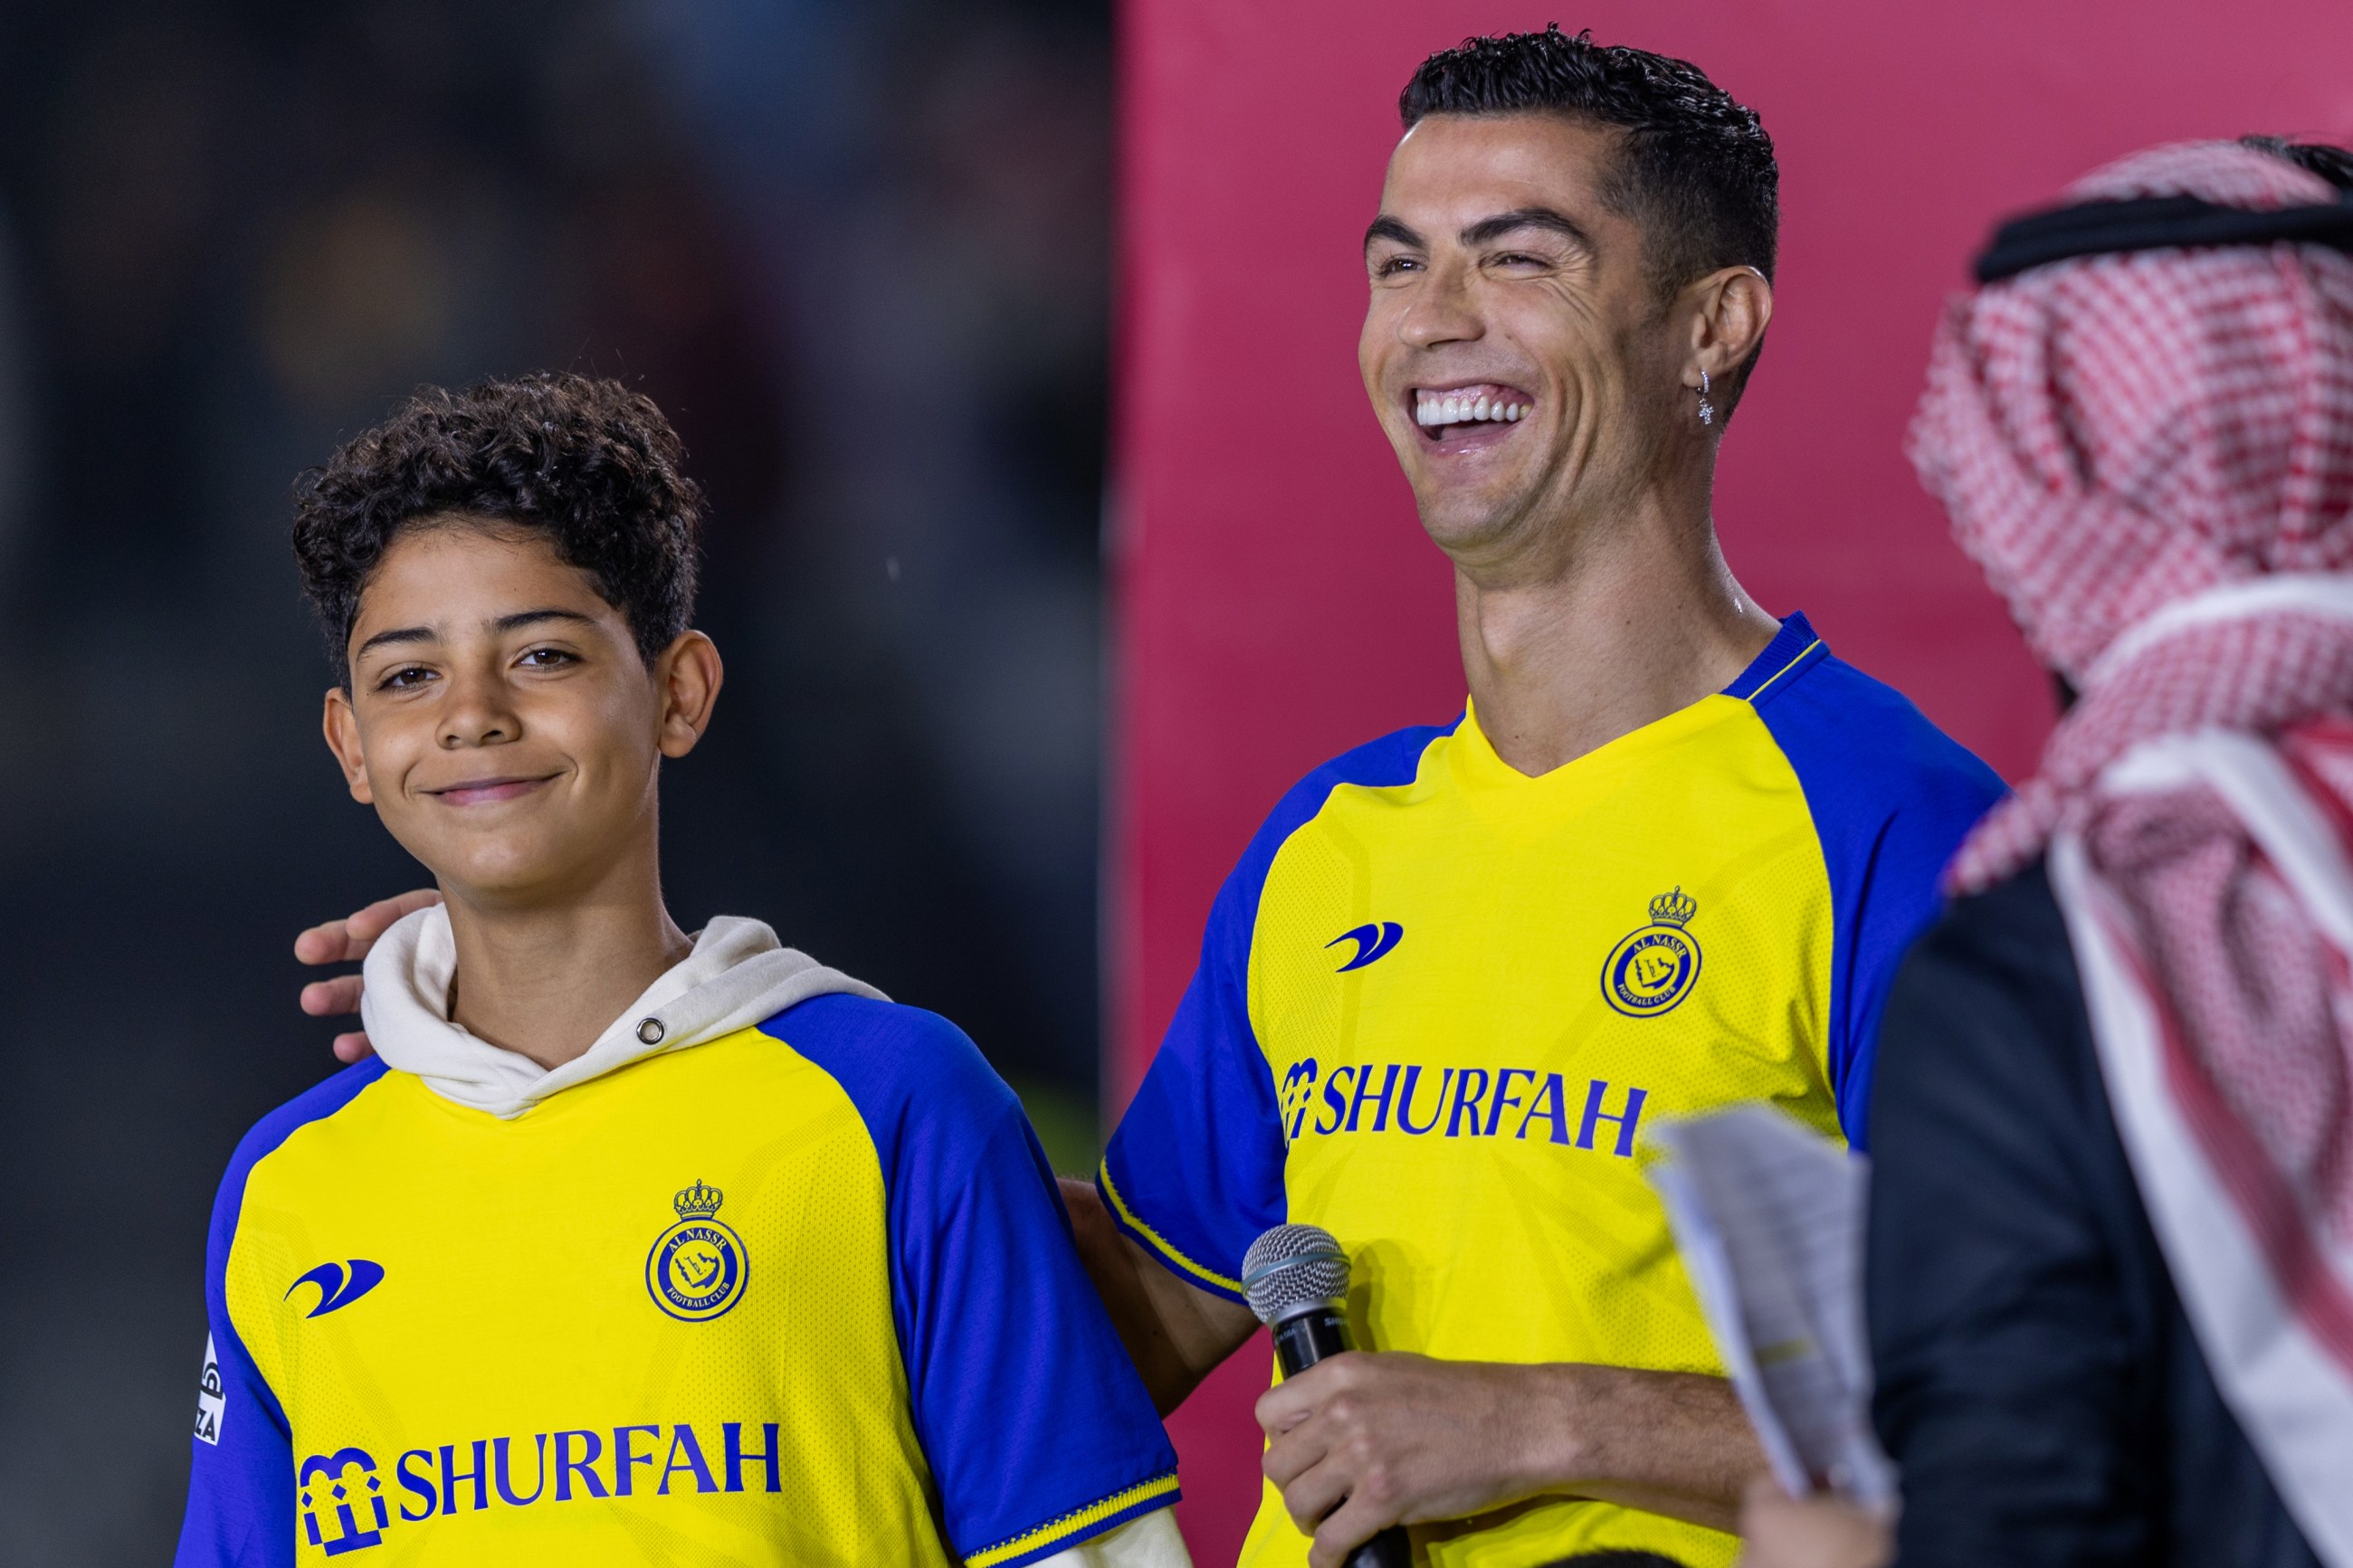 El hijo de Cristiano Ronaldo parece el clon de su papi cuando era